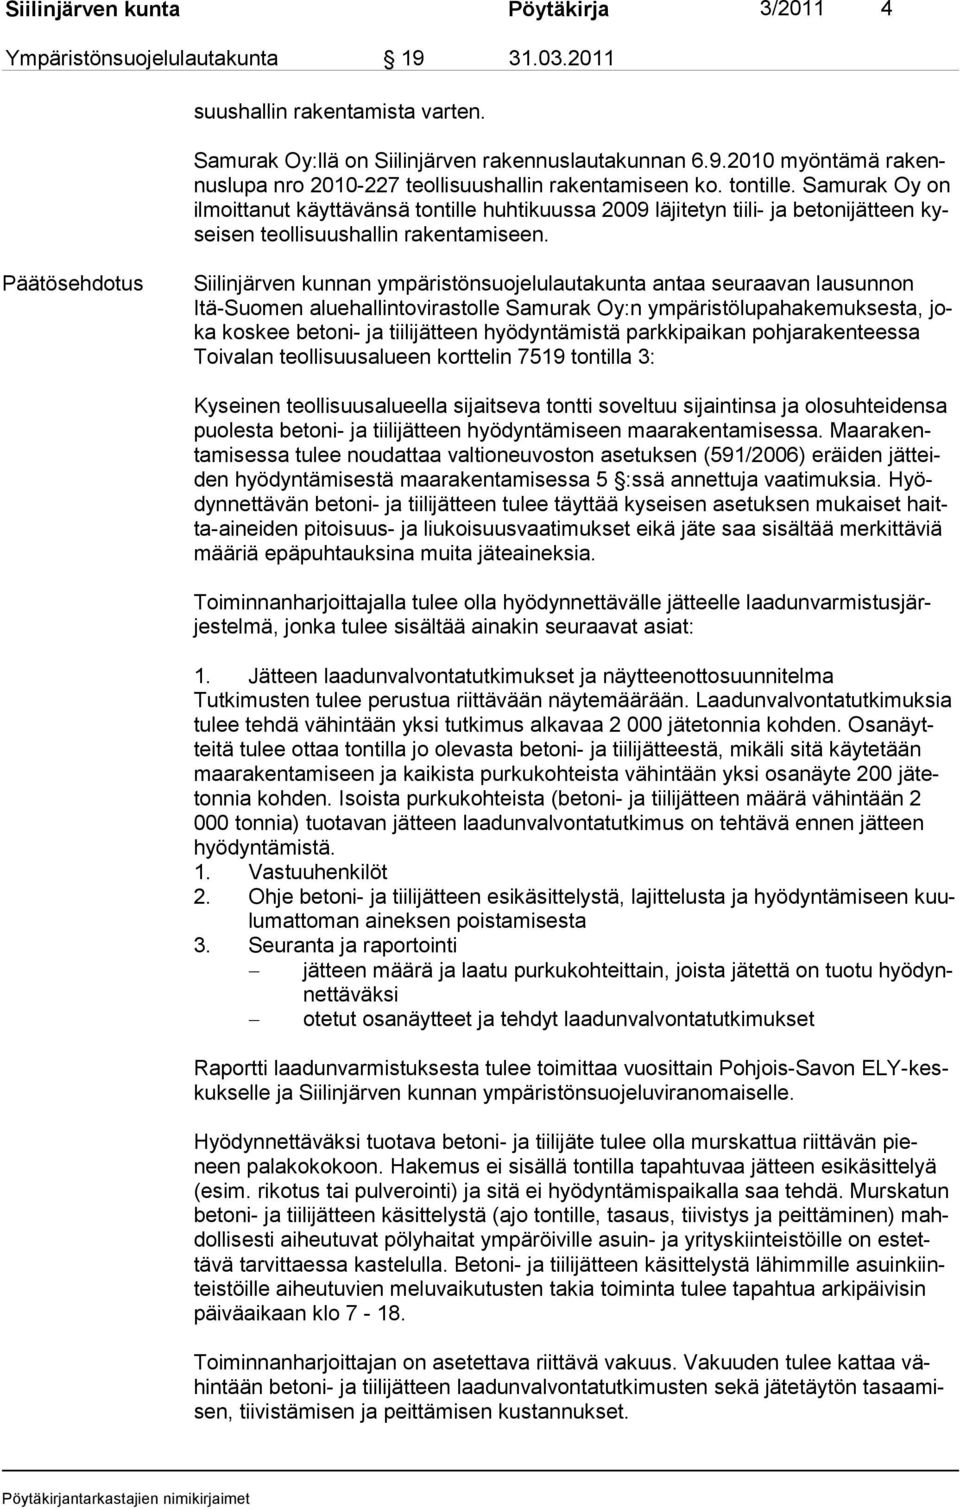 Päätösehdotus Siilinjärven kunnan ympäristönsuojelulautakunta antaa seuraavan lausunnon Itä-Suomen aluehallintovirastolle Samurak Oy:n ympäristölupahakemuksesta, joka koskee betoni- ja tiilijätteen